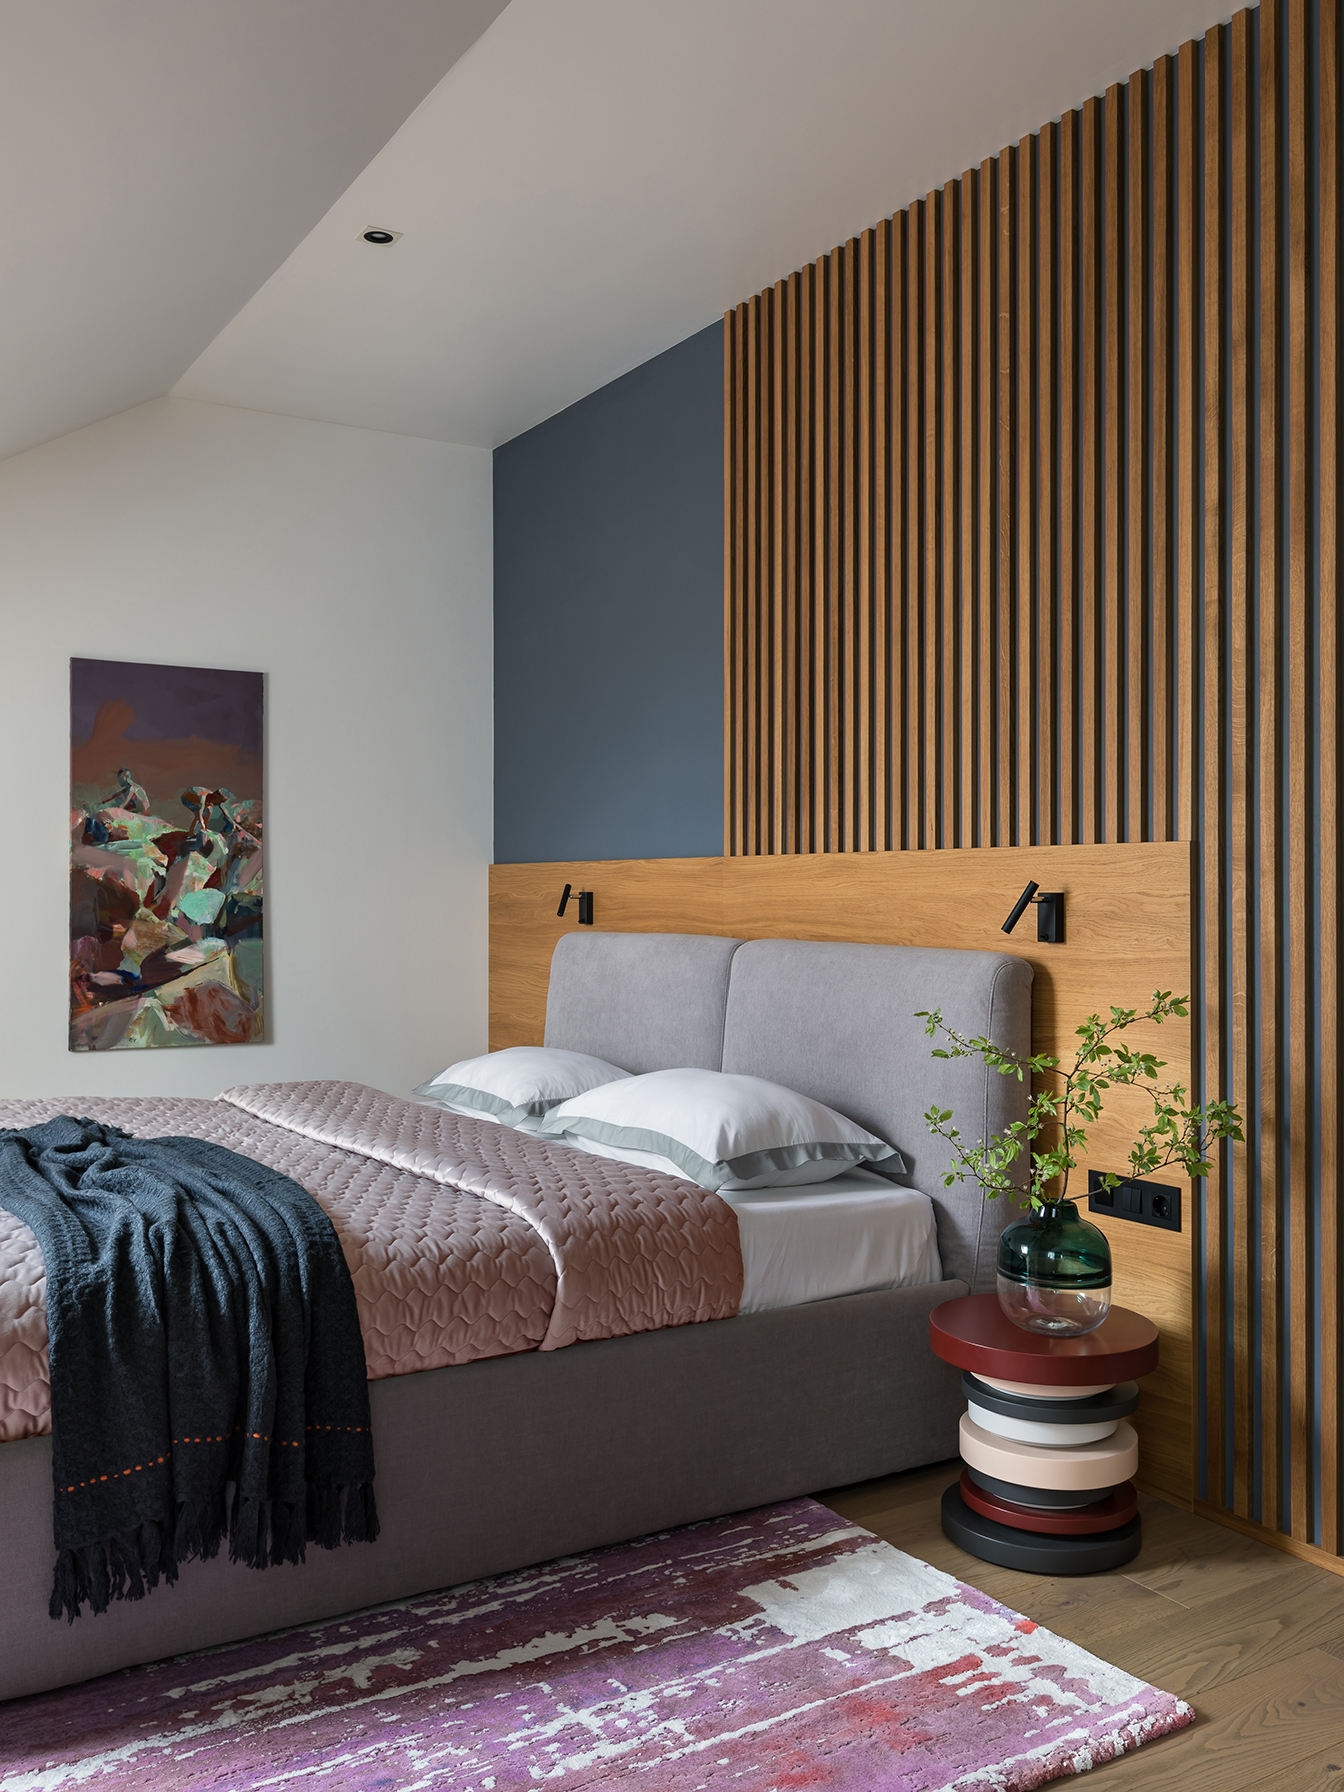 рейки в интерьере на стене в спальне деревянные